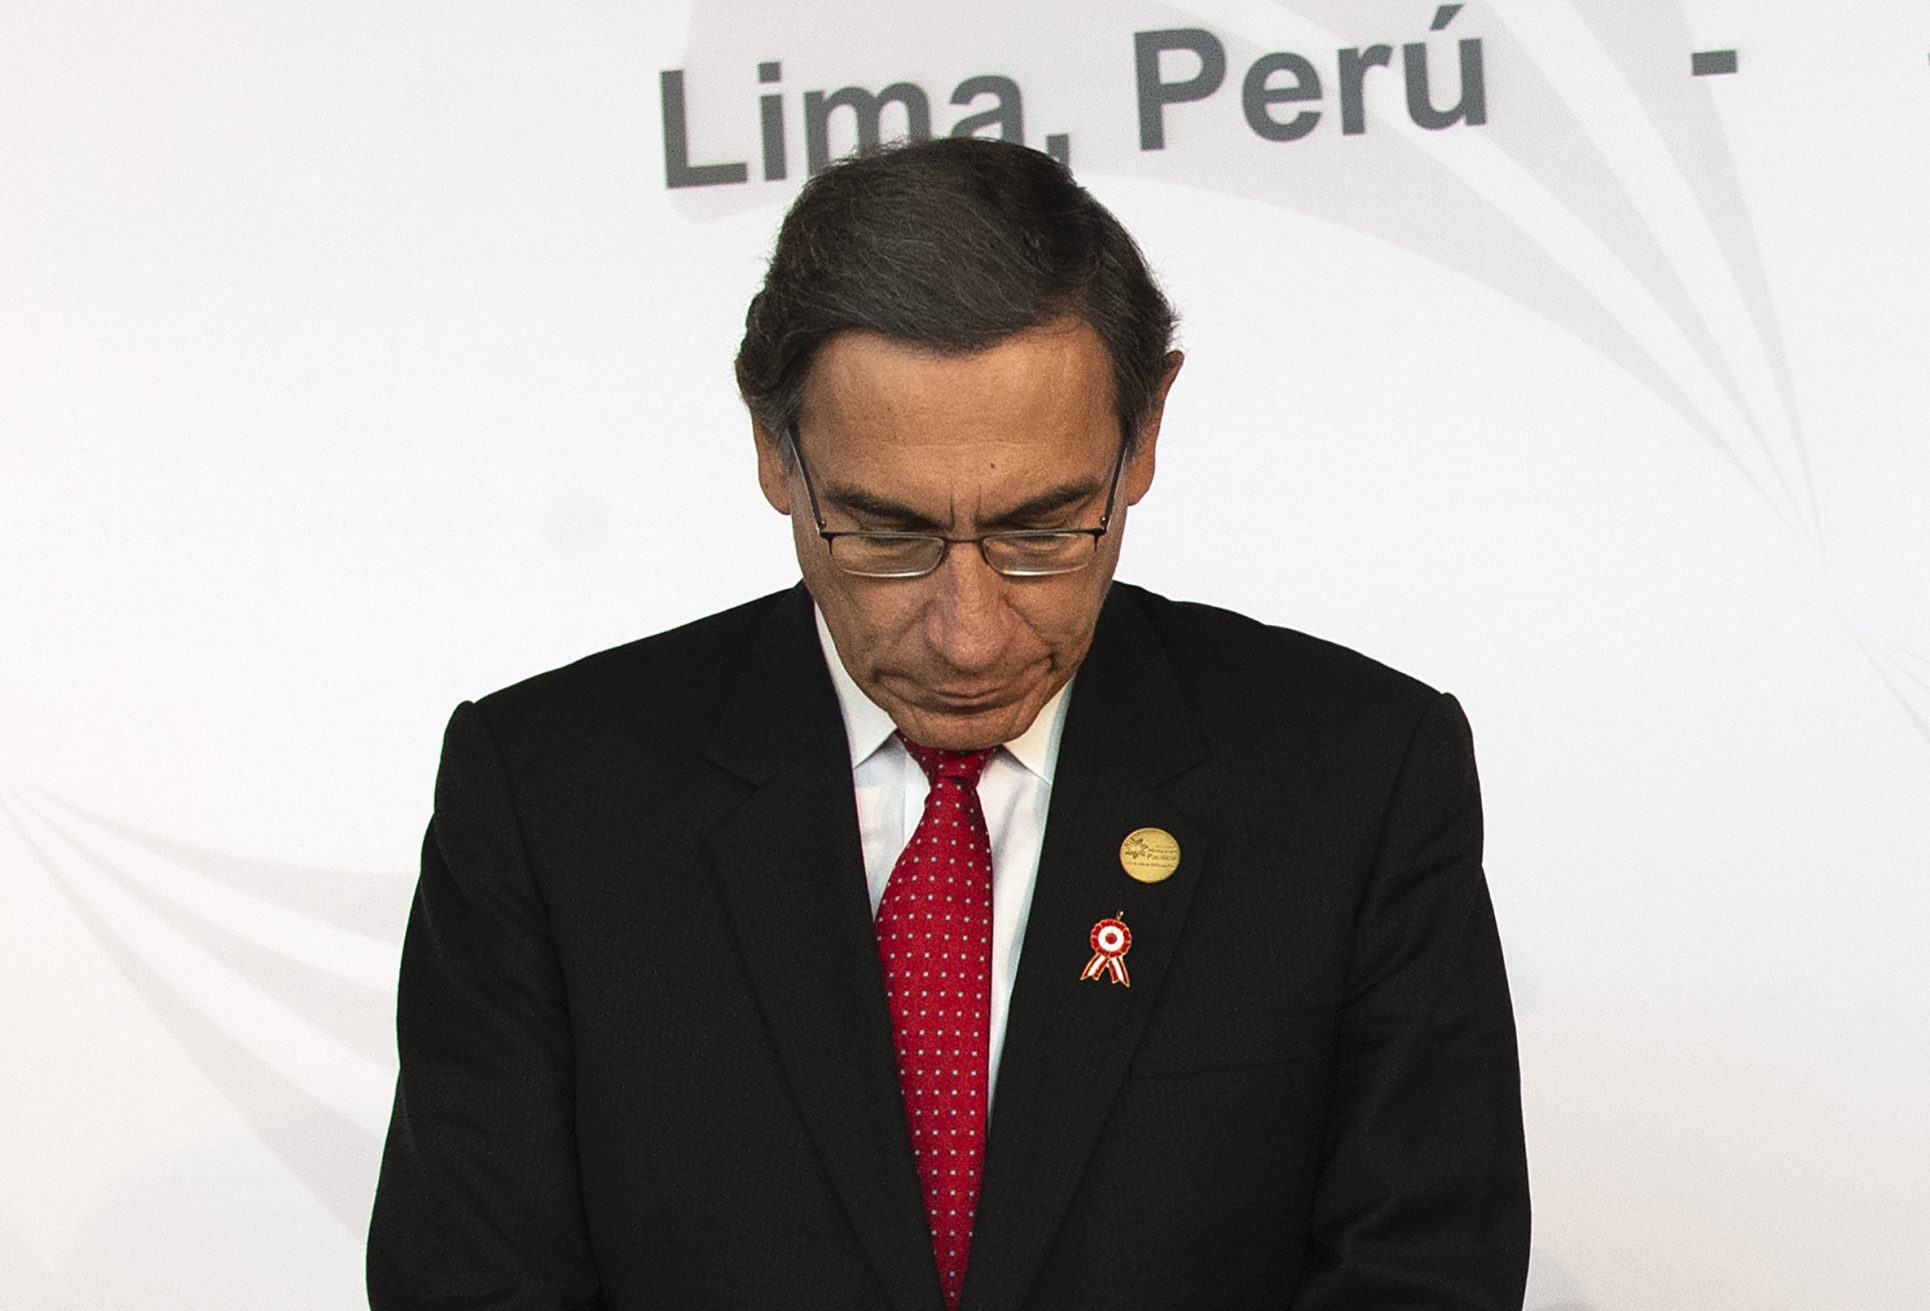 Presidente de Perú acusa al jefe del Congreso de “conspiración” para destituirlo